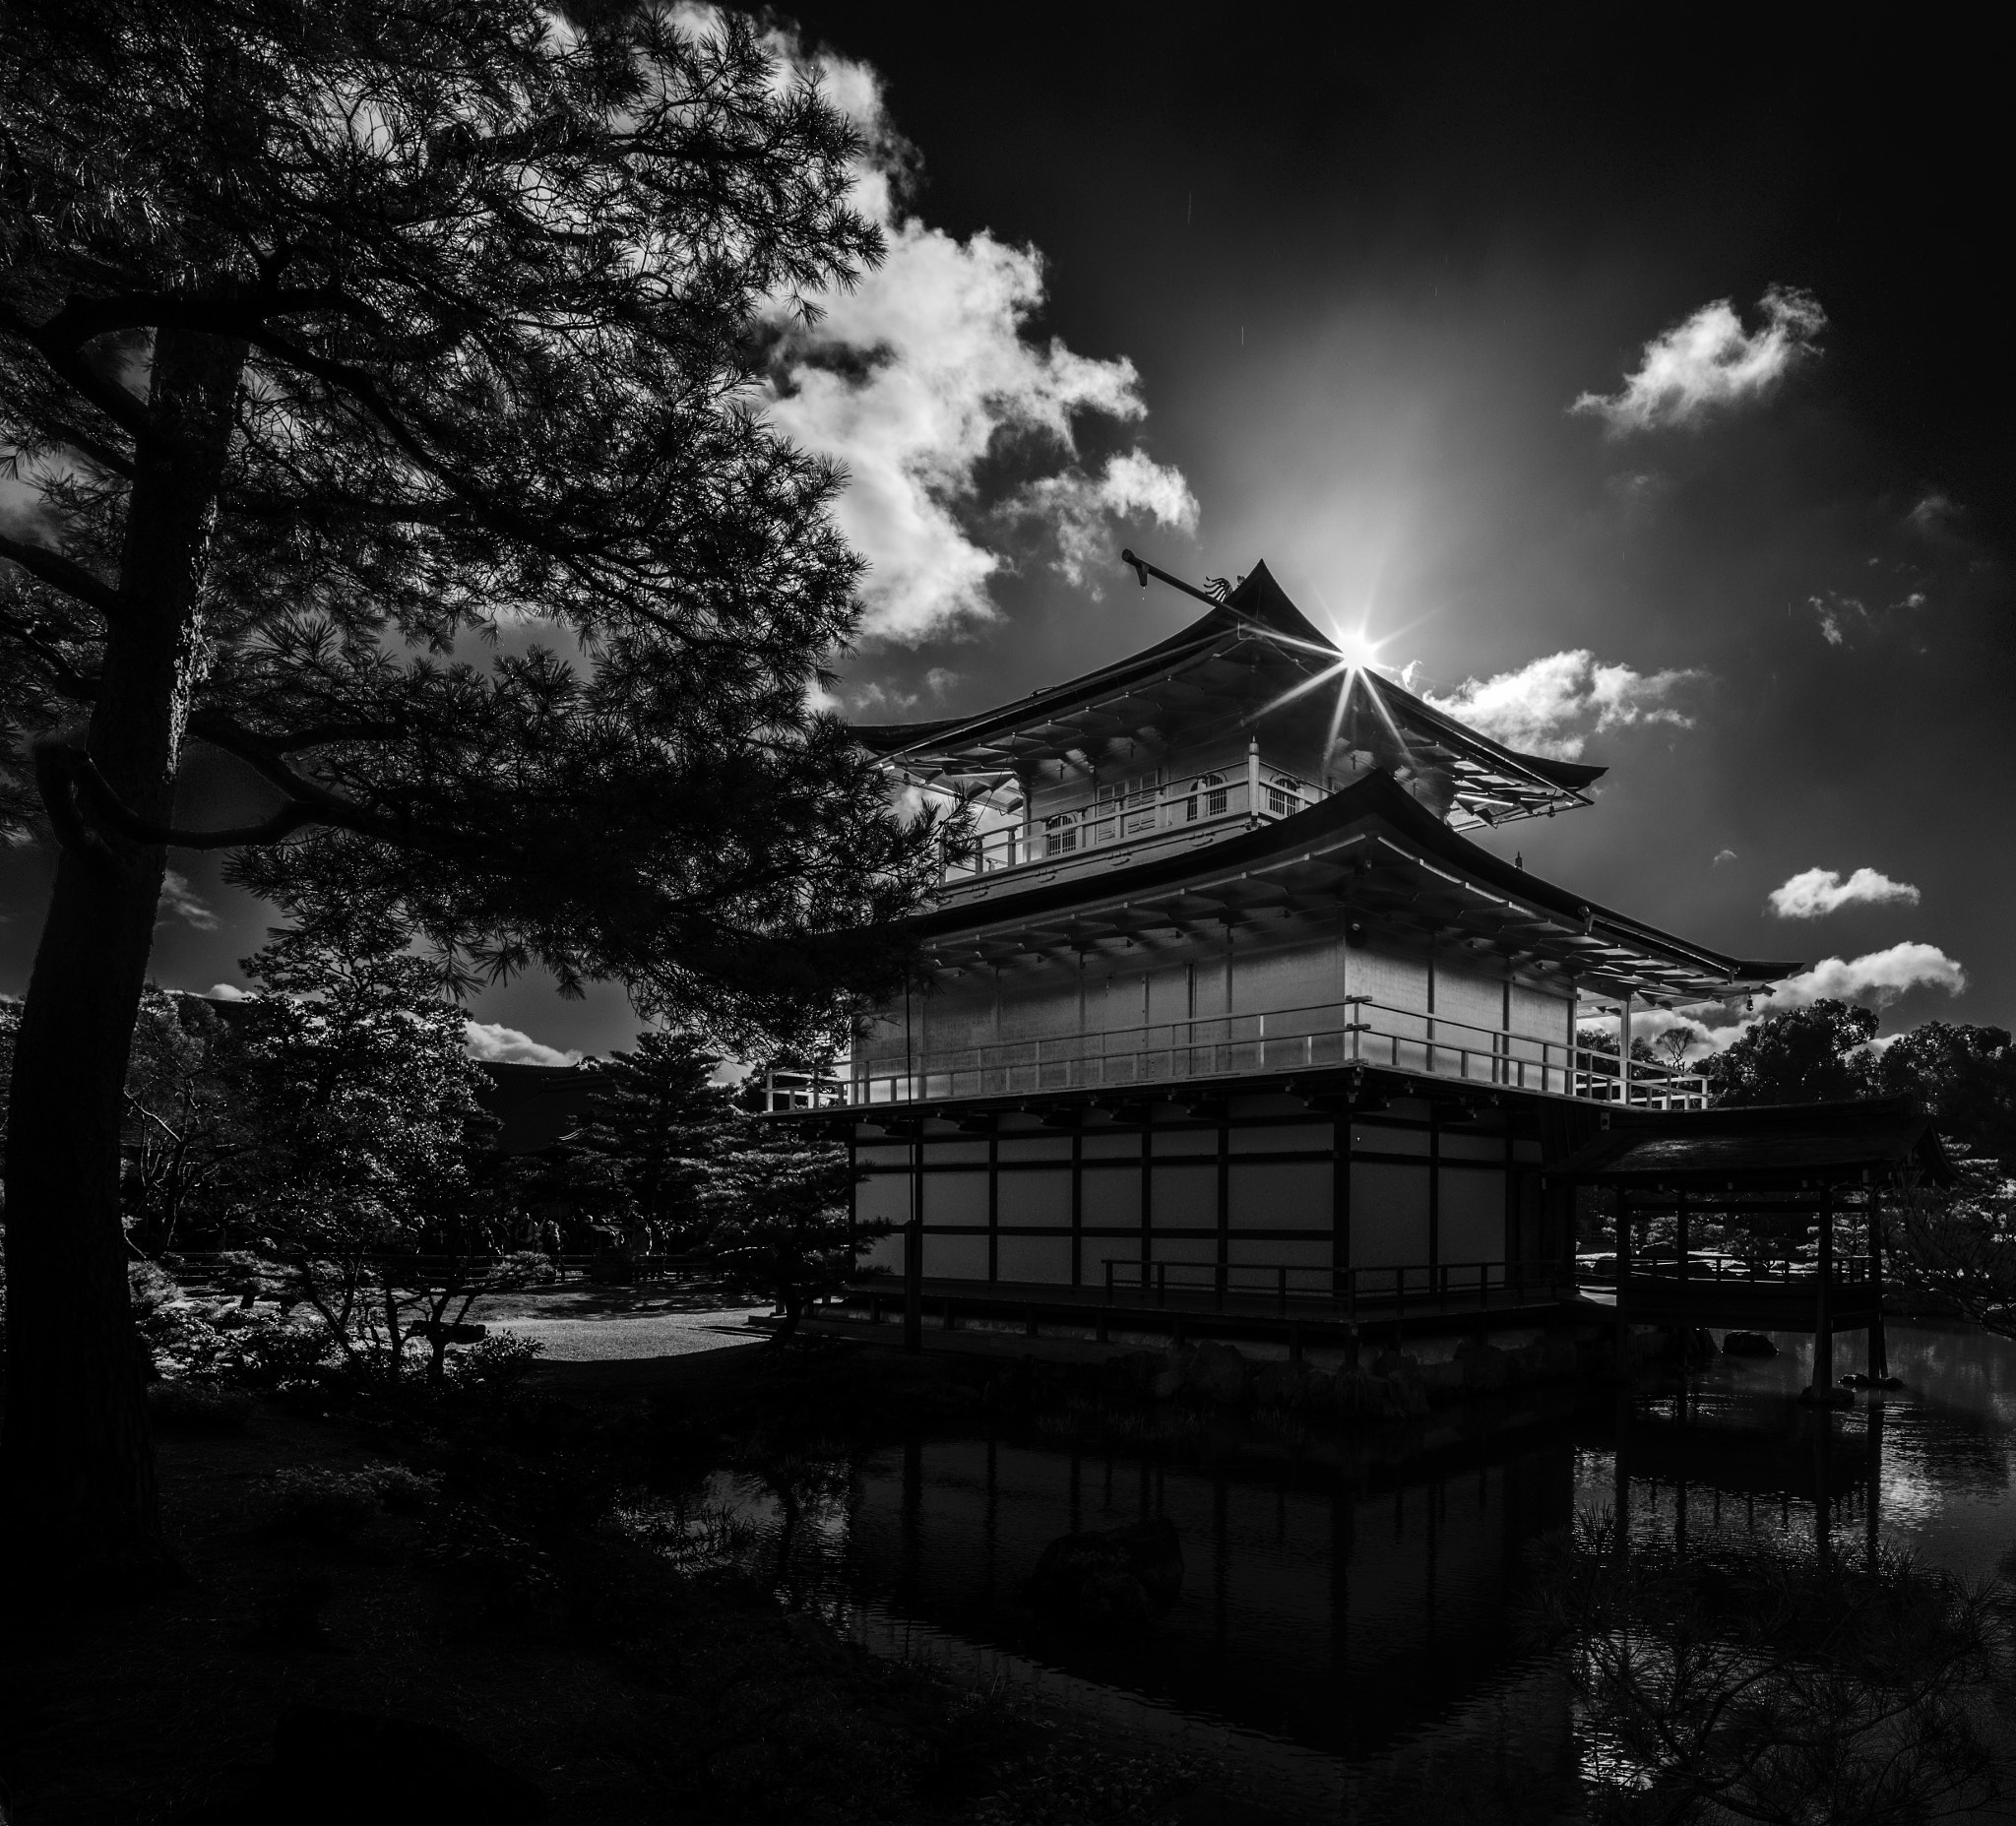 Canon EOS 5D Mark IV + Canon TS-E 17mm F4L Tilt-Shift sample photo. Kinkaku-ji temple (the golden pavilion) photography